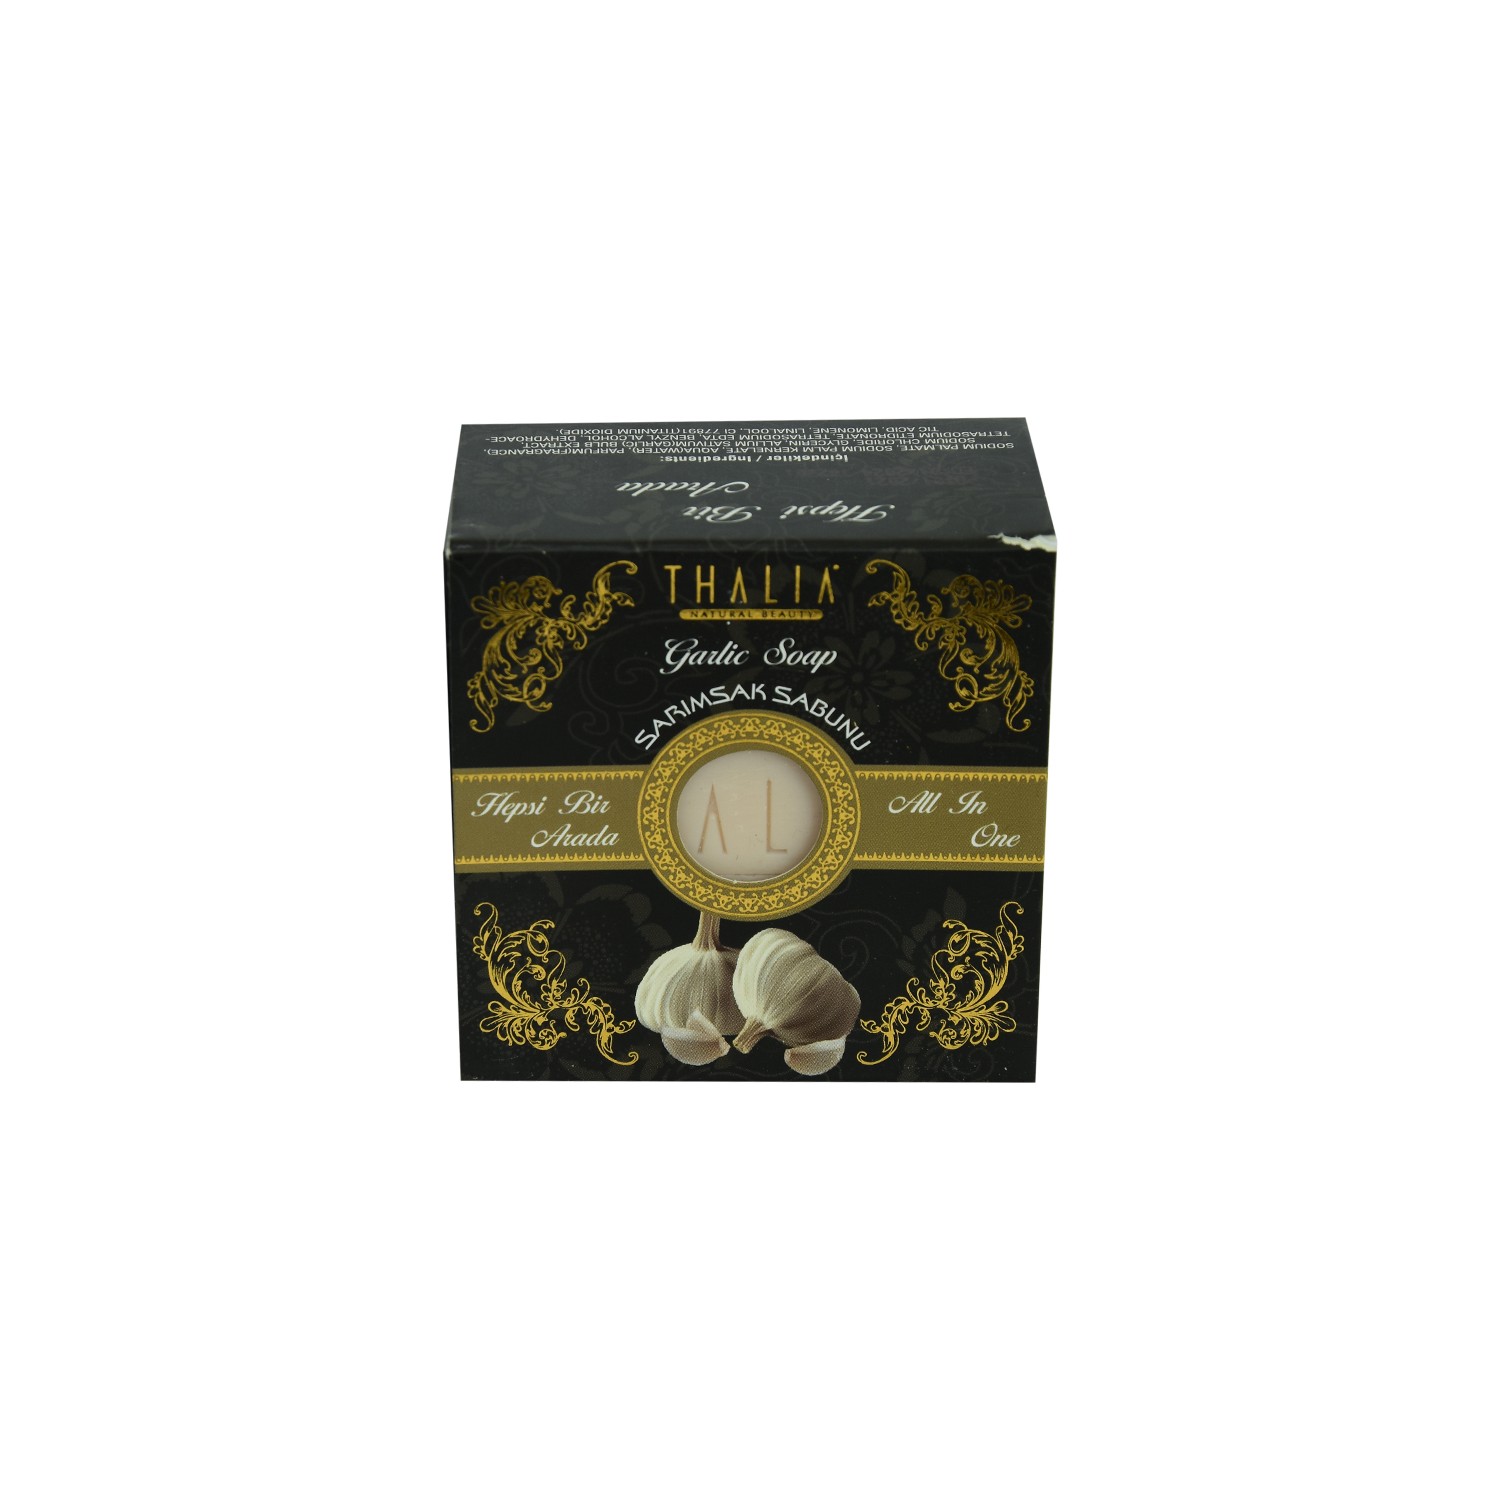 Мыло чесночное Thalia фигурное тайское мыло siam herb soap в ассортименте 150 гр